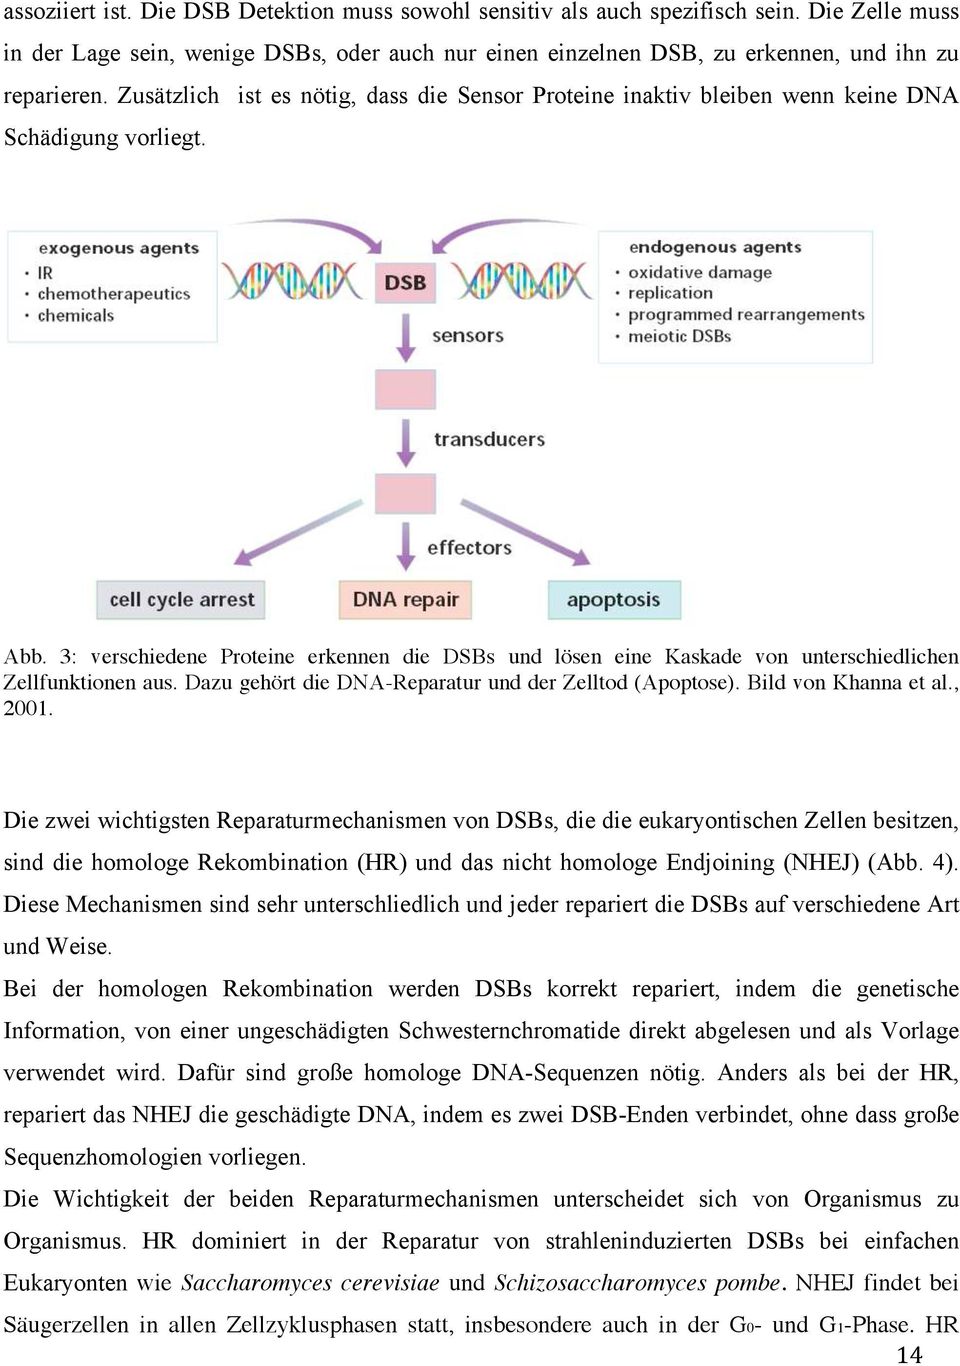 3: verschiedene Proteine erkennen die DSBs und lösen eine Kaskade von unterschiedlichen Zellfunktionen aus. Dazu gehört die DNA-Reparatur und der Zelltod (Apoptose). Bild von Khanna et al., 2001.